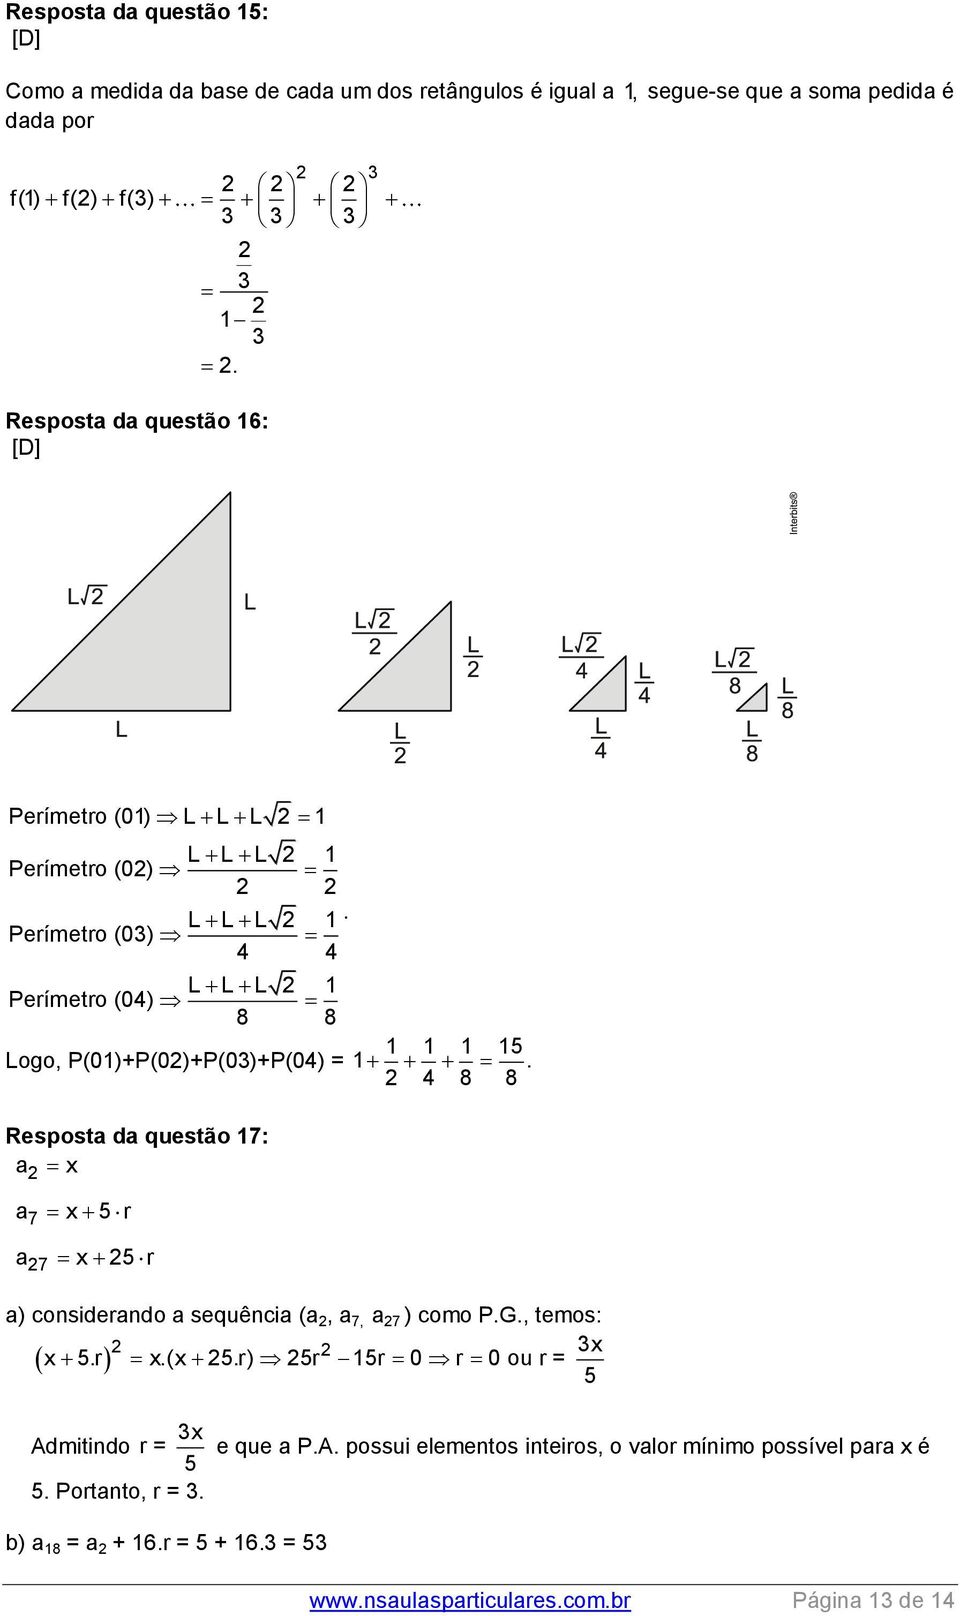 P(01)+P(0)+P(0)+P(04) = 1. 4 8 8 Resposta da questão 17: a 7 7 x a x 5 r a x 5 r a) cosiderado a sequêcia (a, a 7, a 7 ) como P.G., temos: x x 5.r x.(x 5.